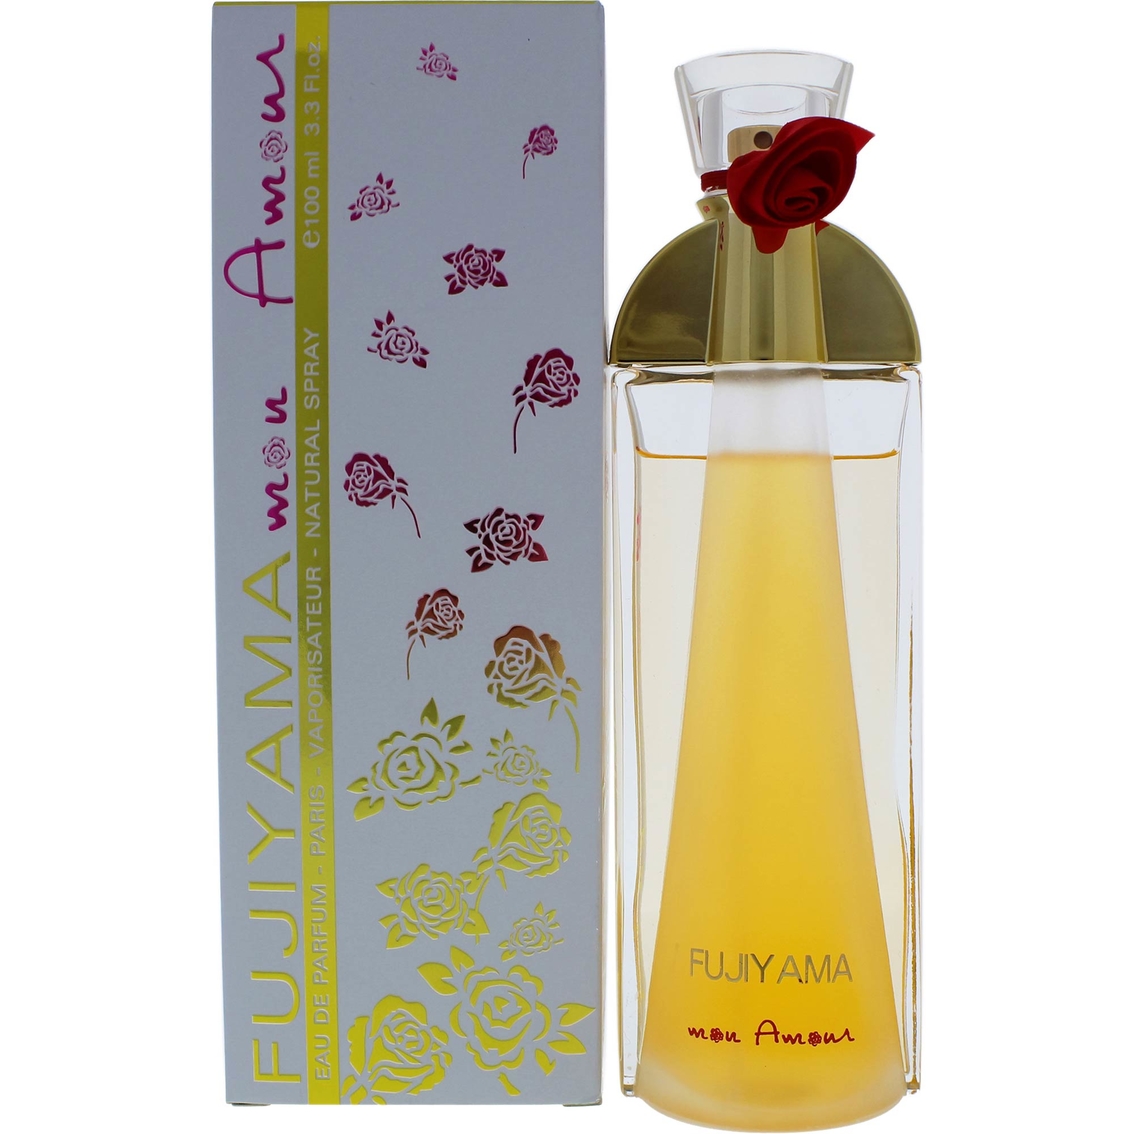 Succes De Paris Fujiyama Mon Amour for Women Eau de Parfum Spray - Image 2 of 2